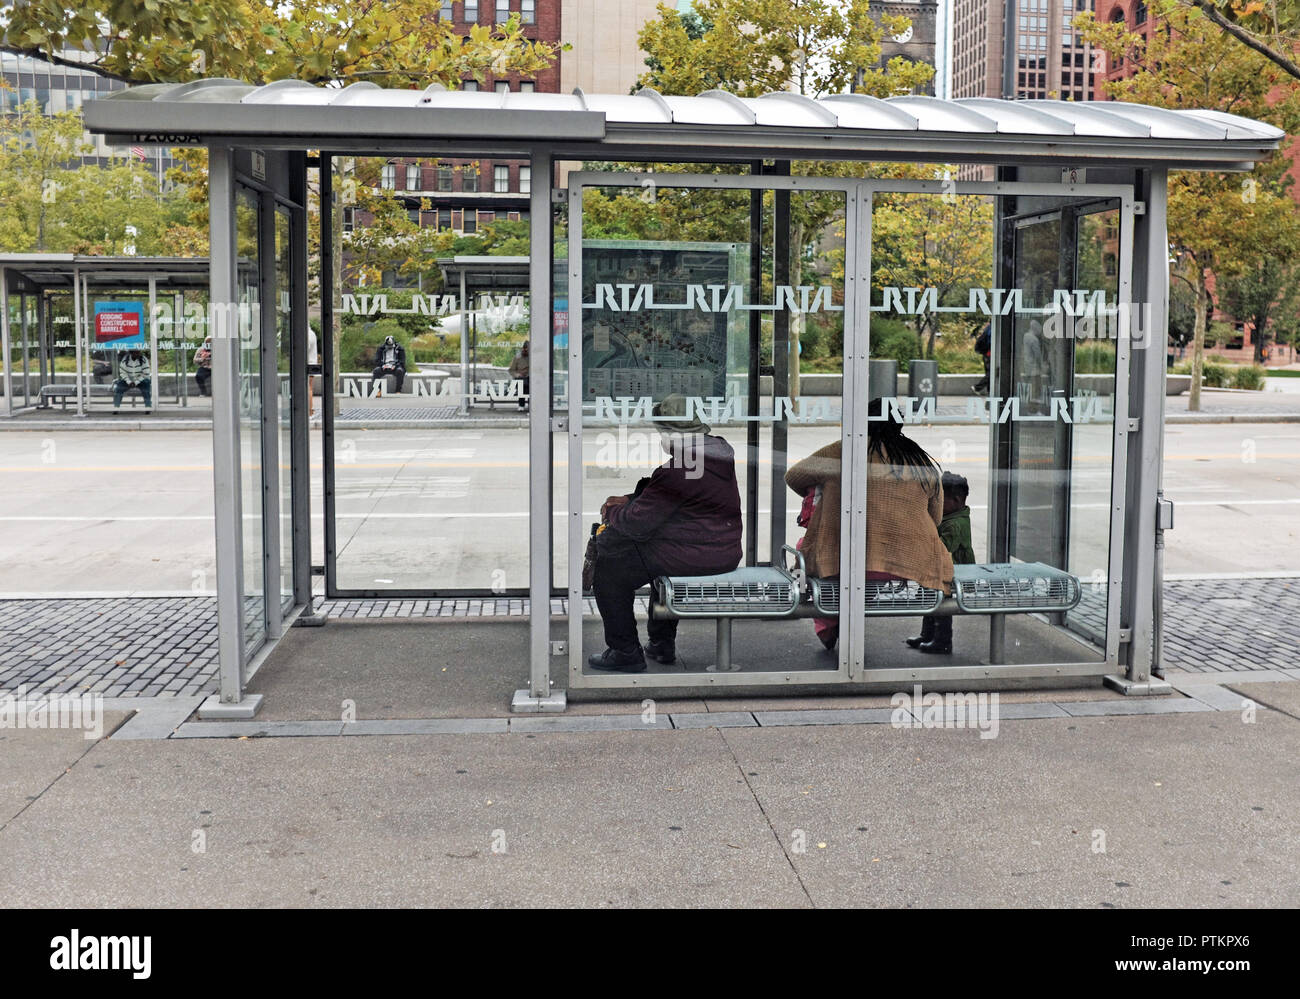 Les femmes attendent dans un abri-bus public sur place publique dans le centre-ville de Cleveland, Ohio, USA. Banque D'Images